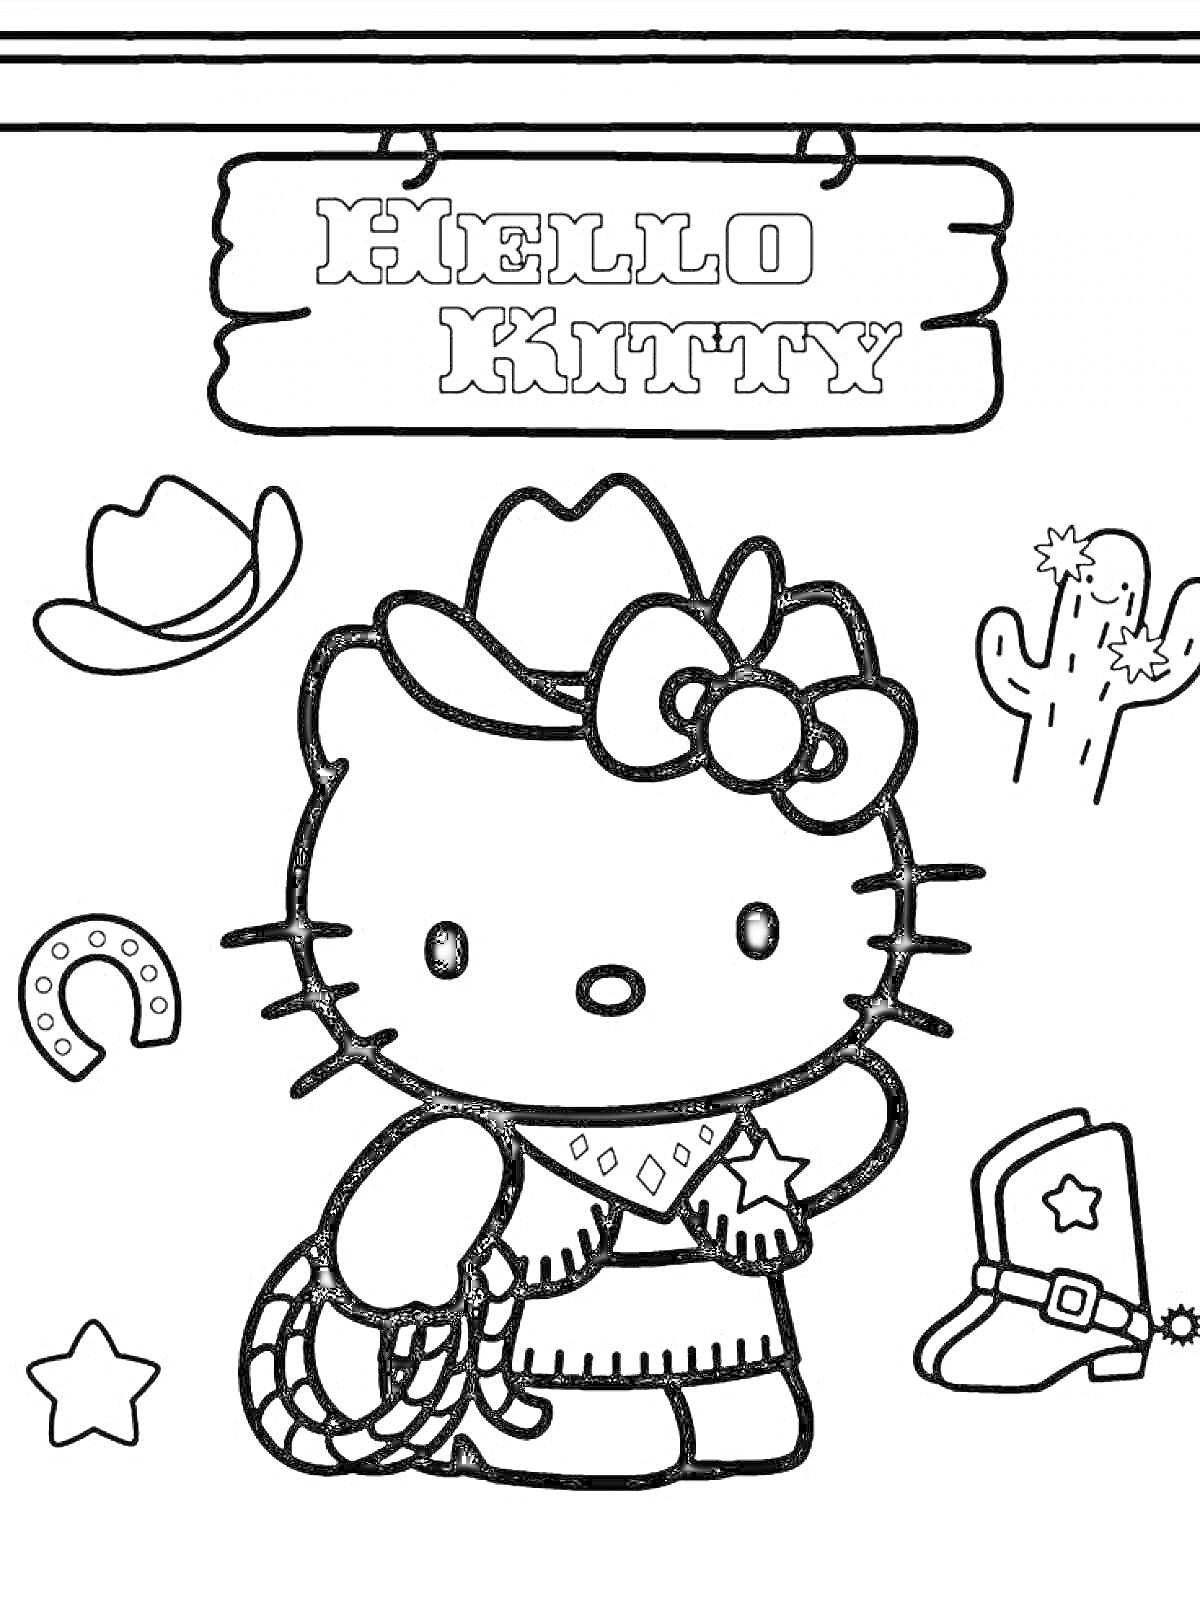 Хелло Китти в ковбойской шляпе, платье с платком на шее и звездой на платье, с веревкой в руках, рядом ковбойская шляпа, кактус, подкова, ковбойский ботинок и звезда, на фоне надпись Hello Kitty